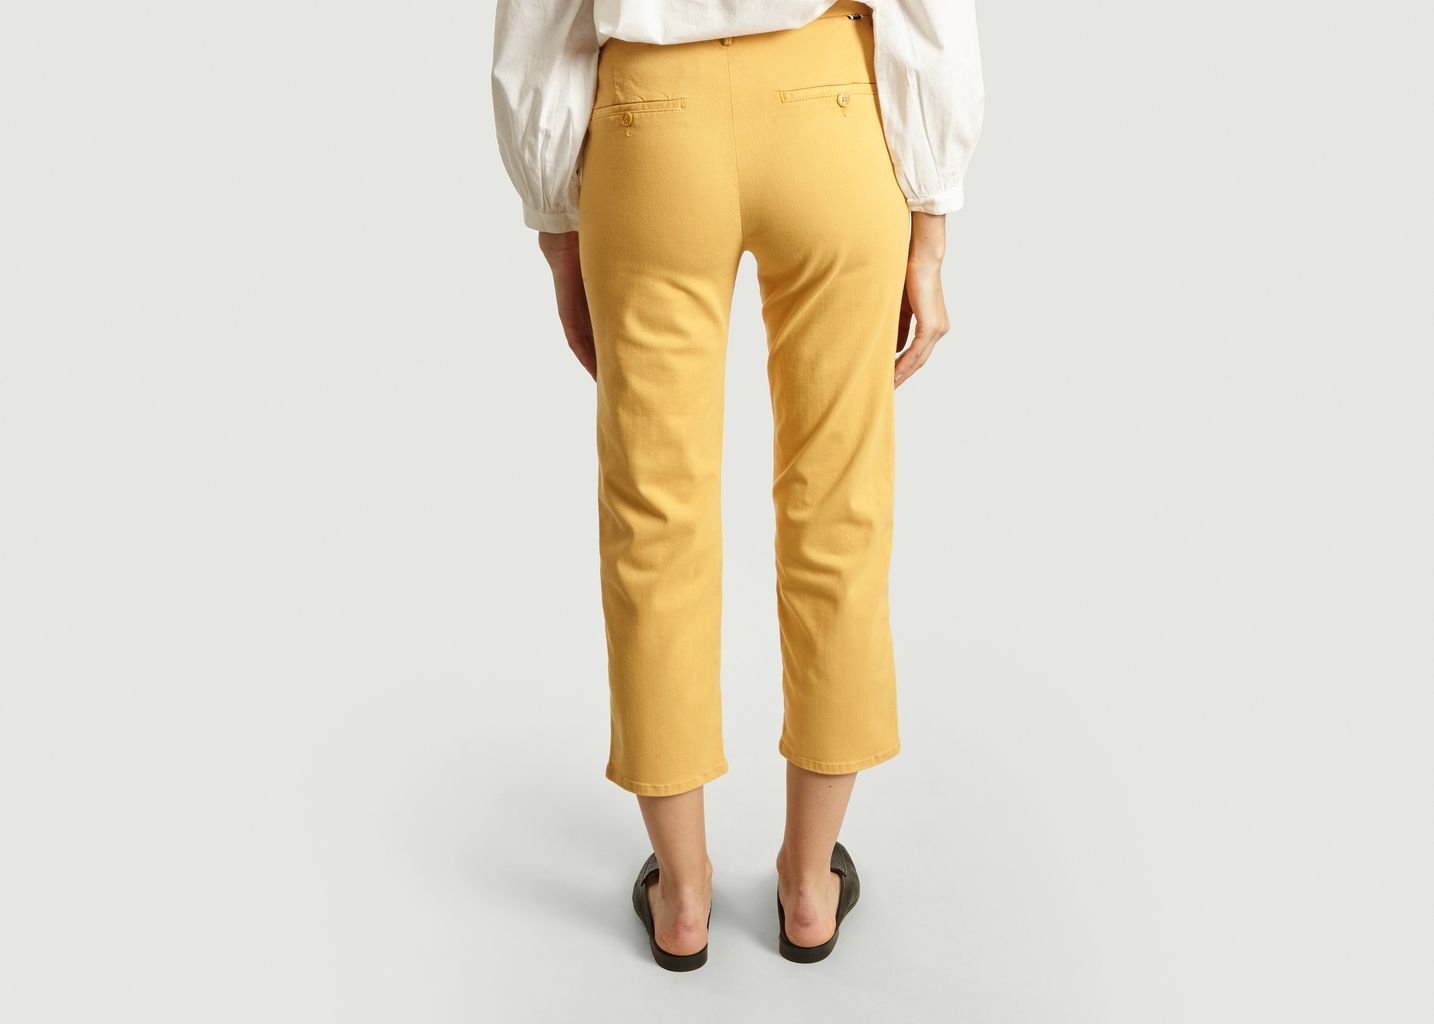 Sandy High Waist 7/8 Length Trousers - Reiko